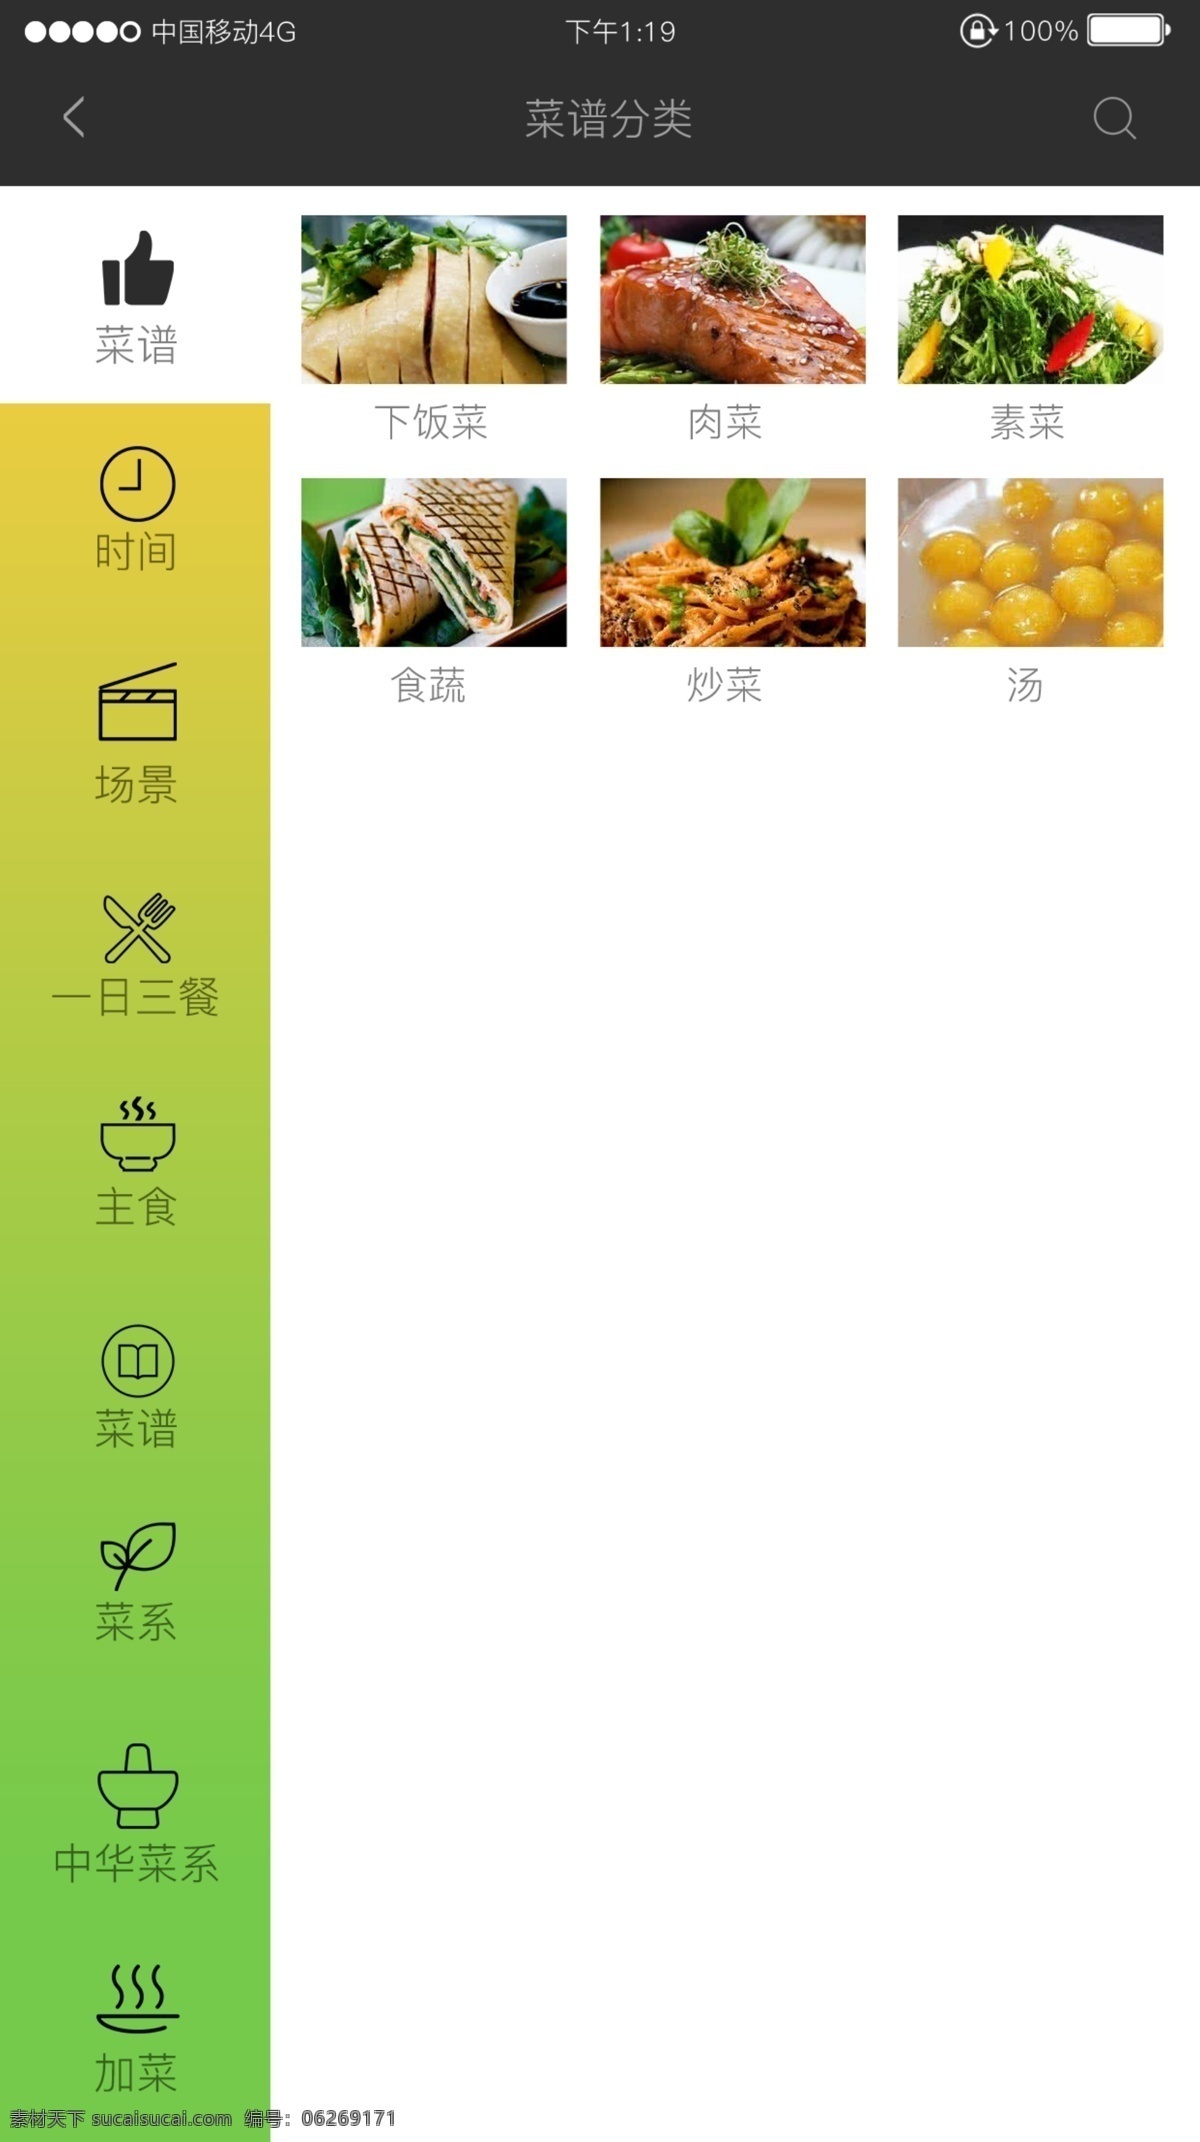 app 餐饮 食 详情 页 导航 菜单 餐饮app 详情页 导航菜单